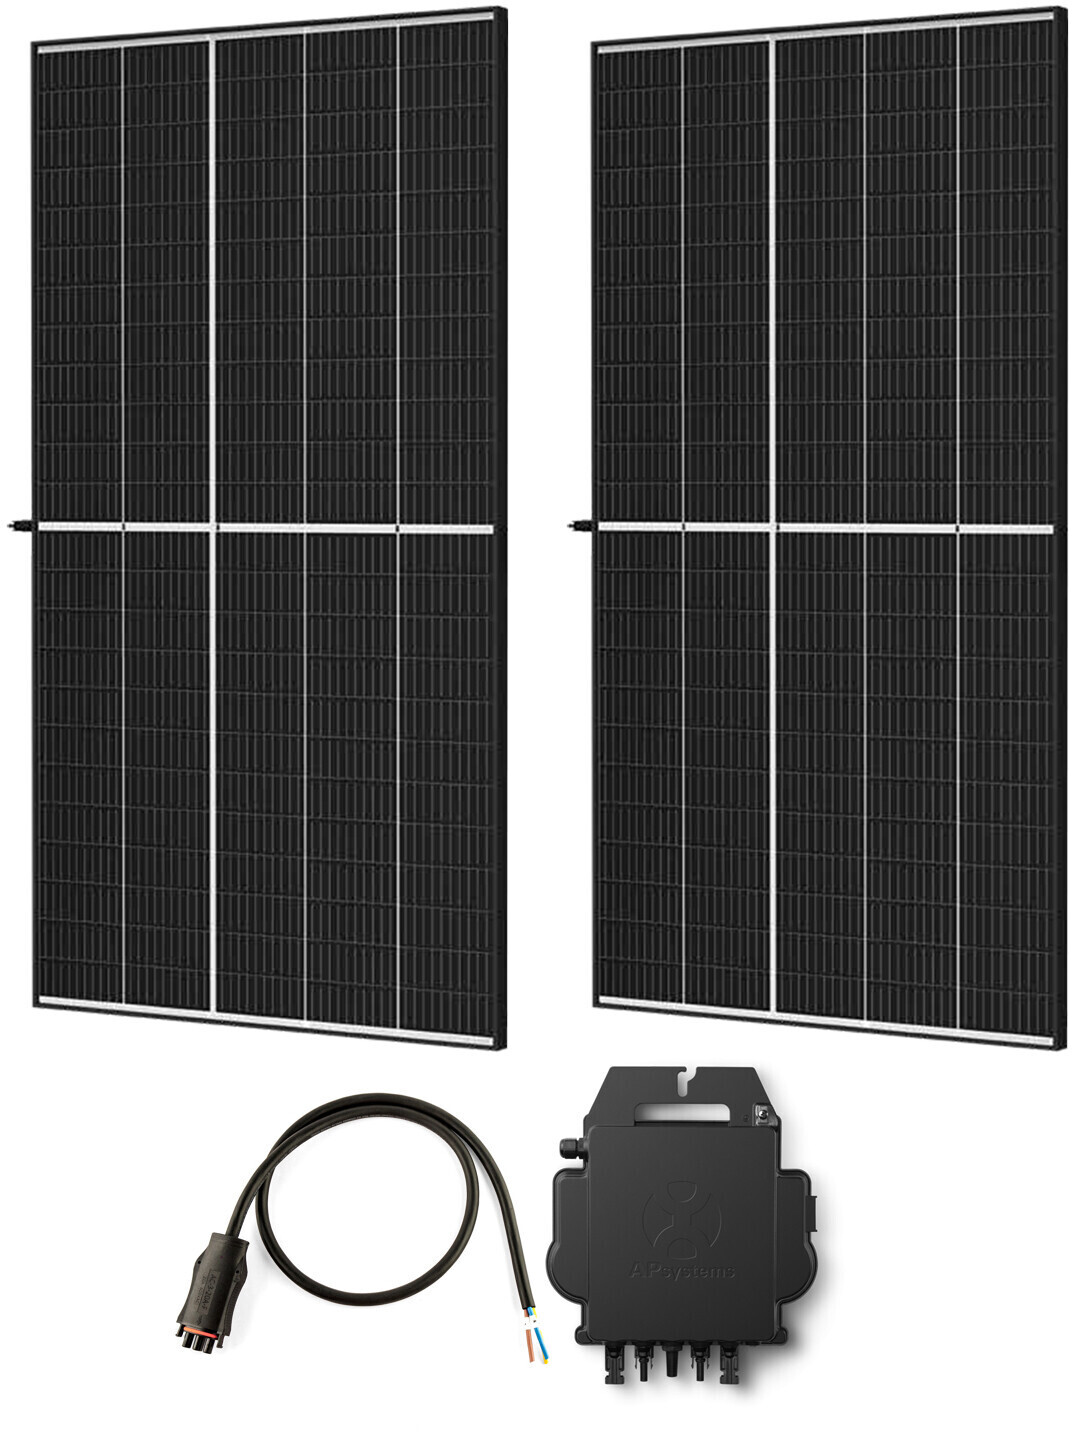 Balkonkraftwerk Photovoltaik Solar Solaranlage Solarmodule